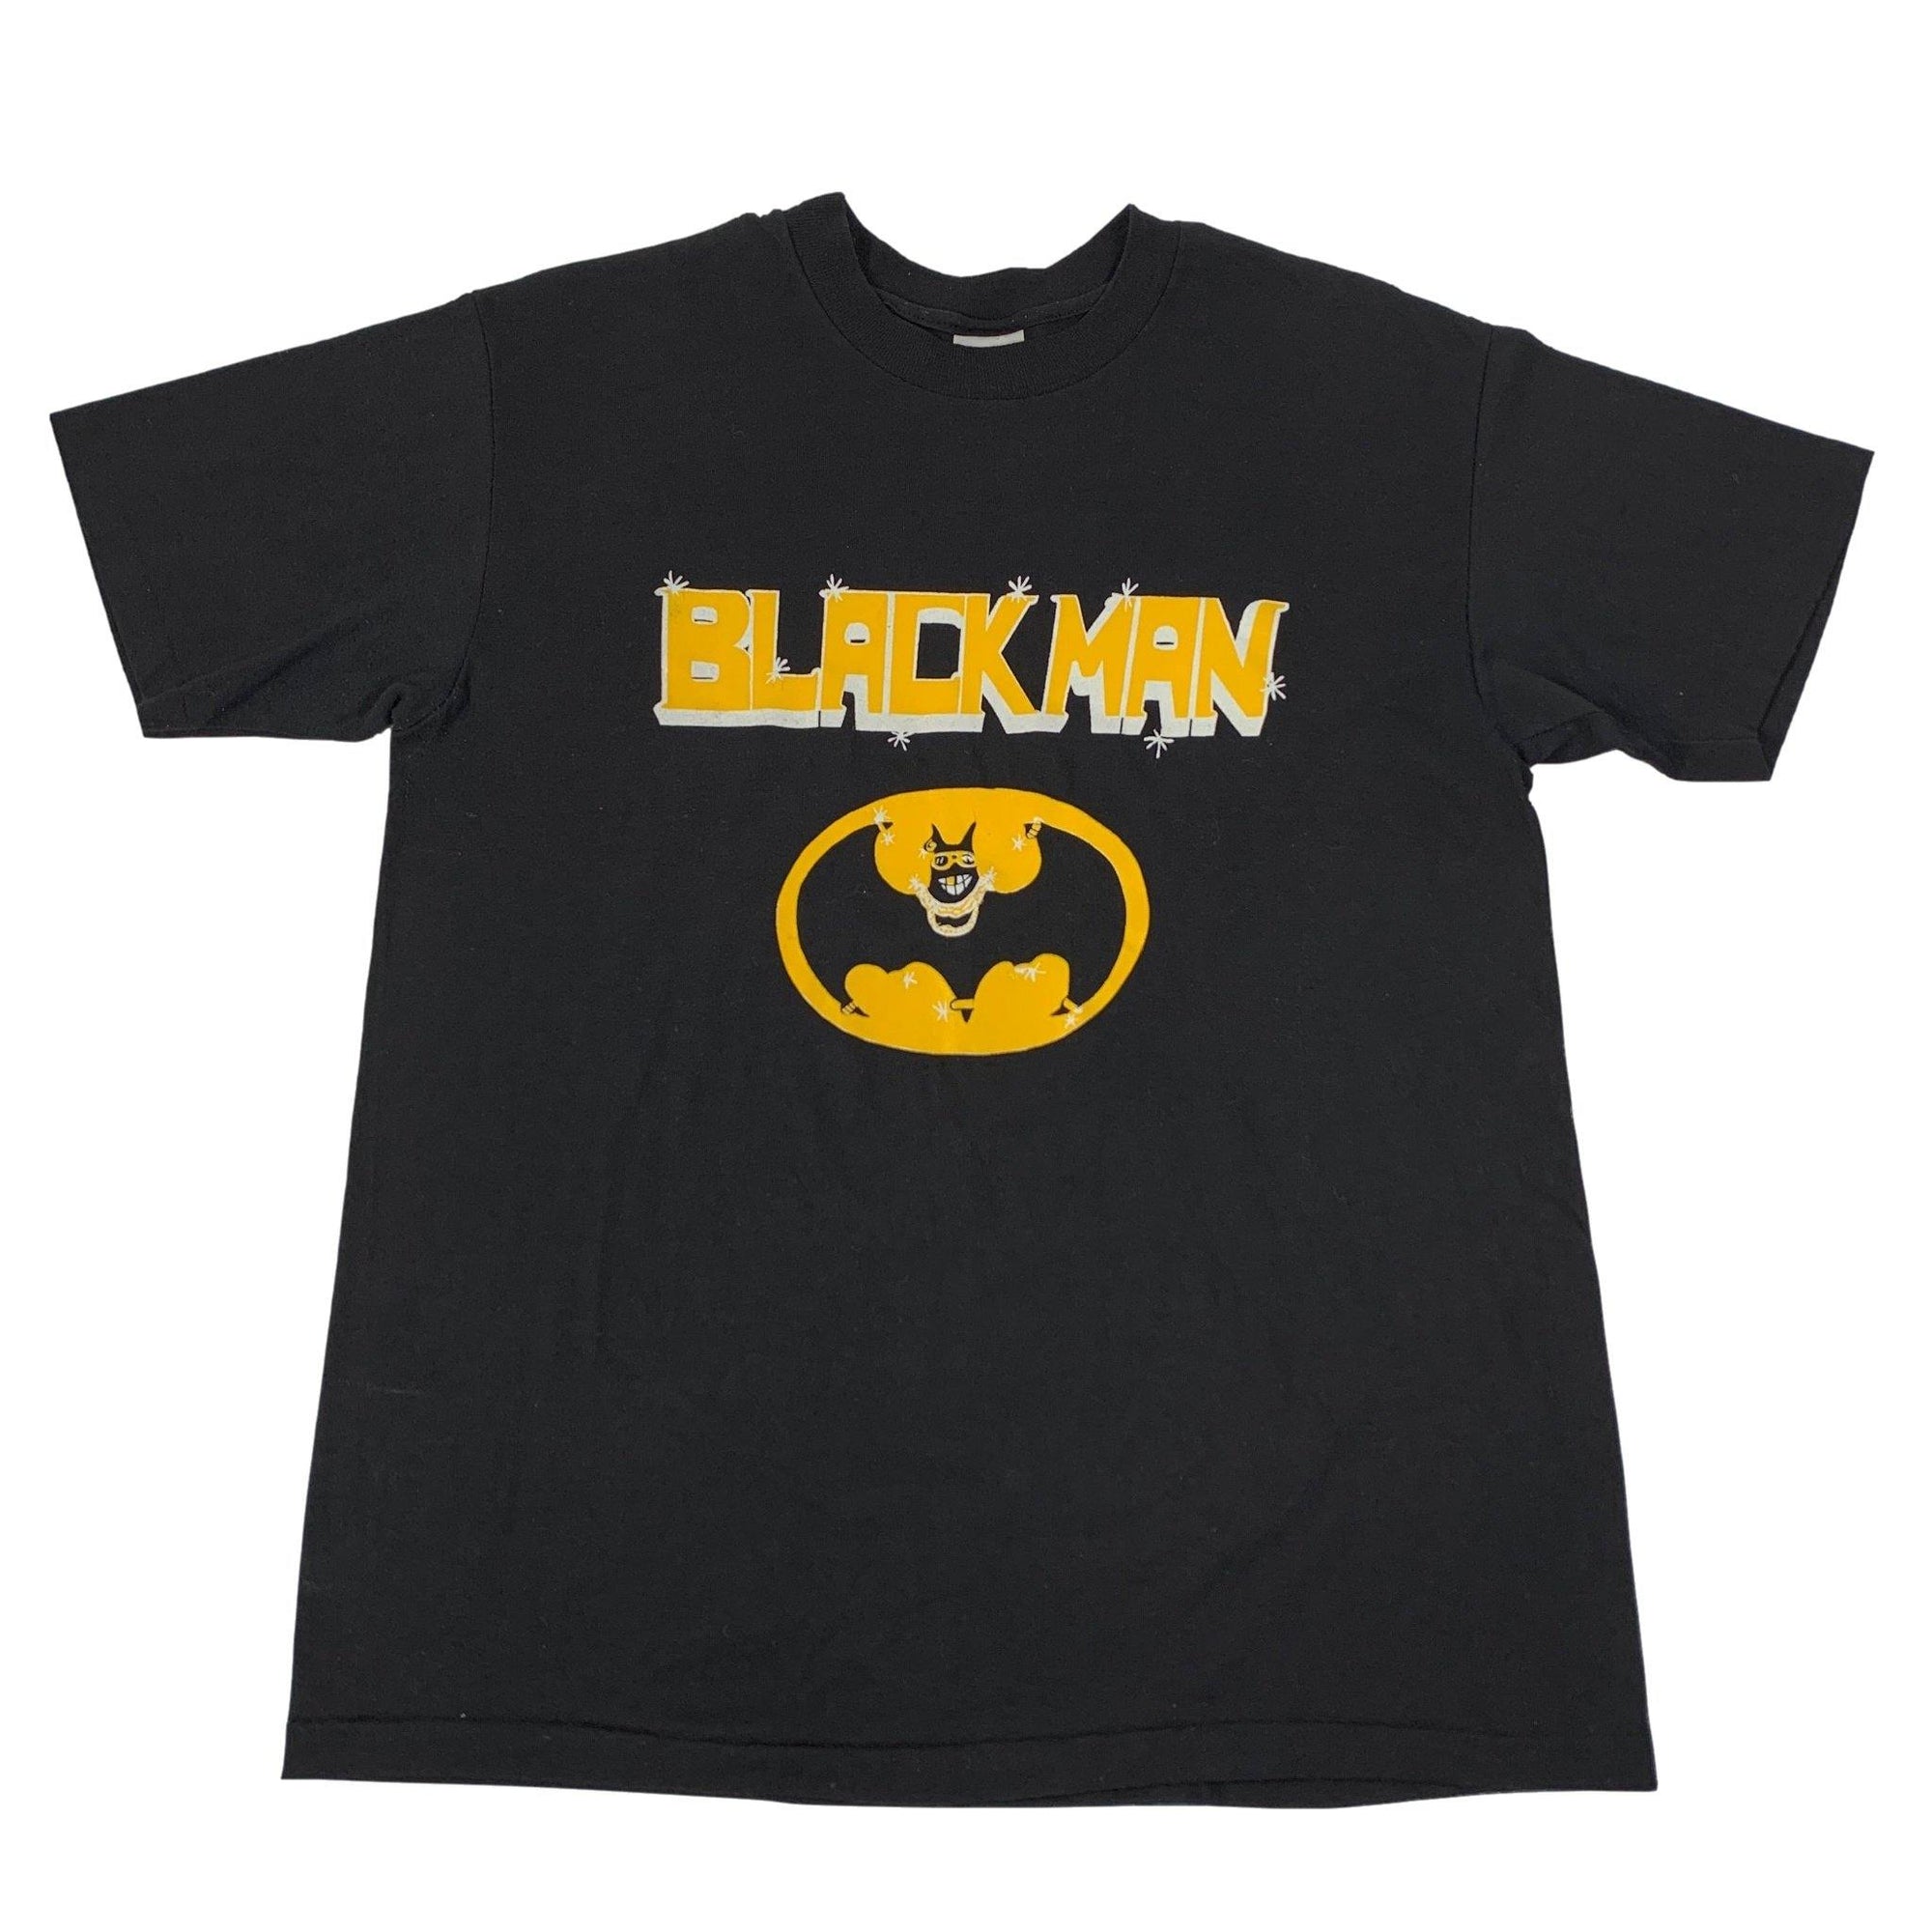 Vintage Batman "Blackman" T-Shirt - jointcustodydc